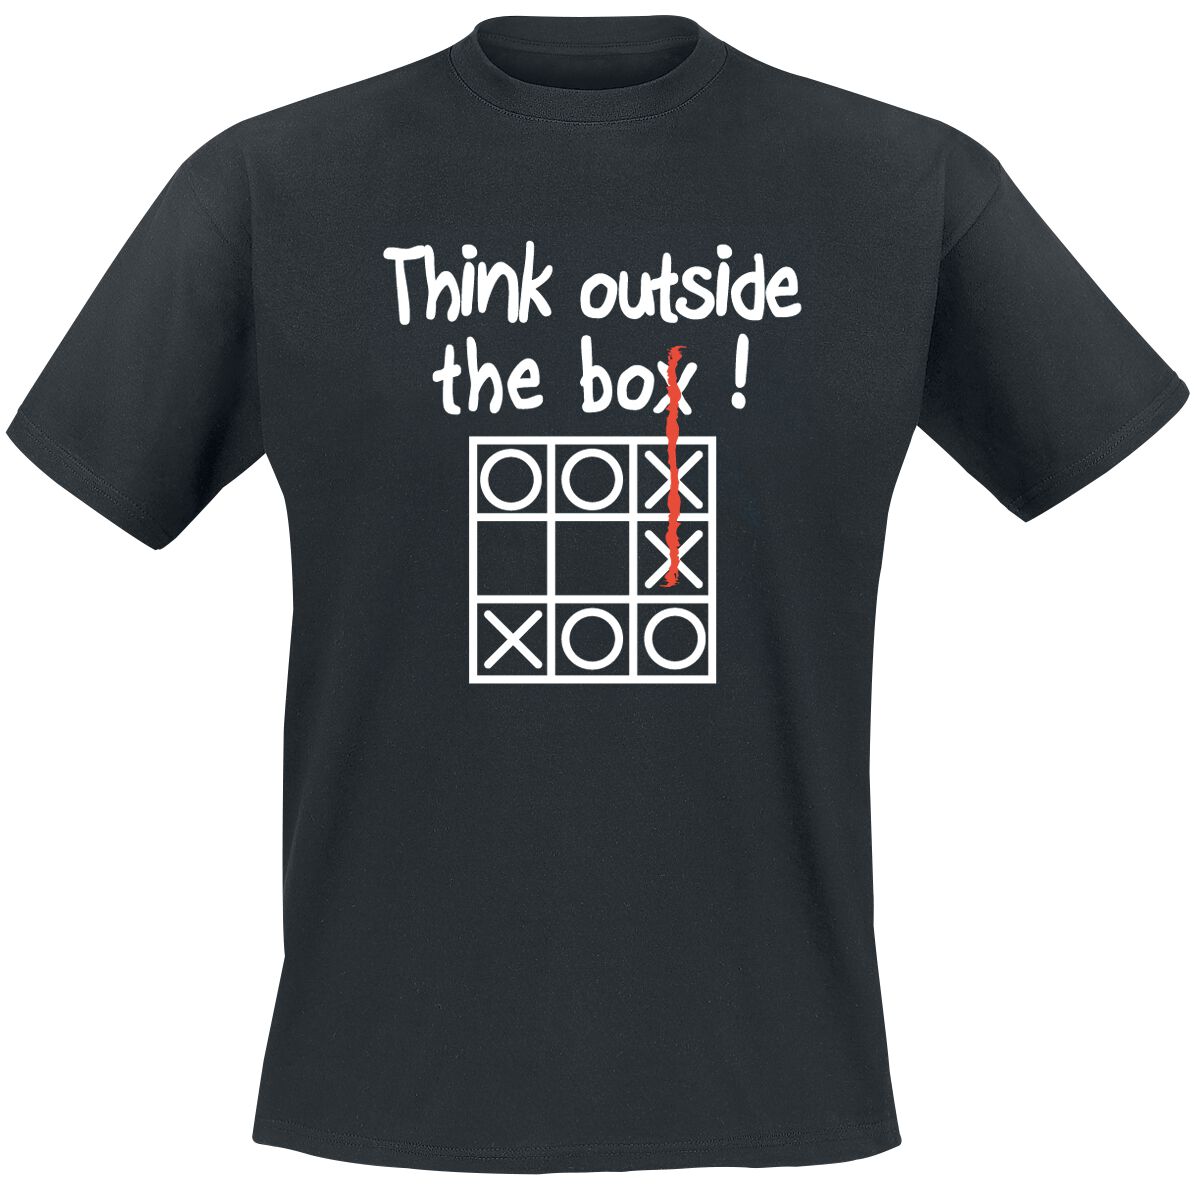 Sprüche T-Shirt - Think Outside The Box - L bis 5XL - für Männer - Größe 3XL - schwarz